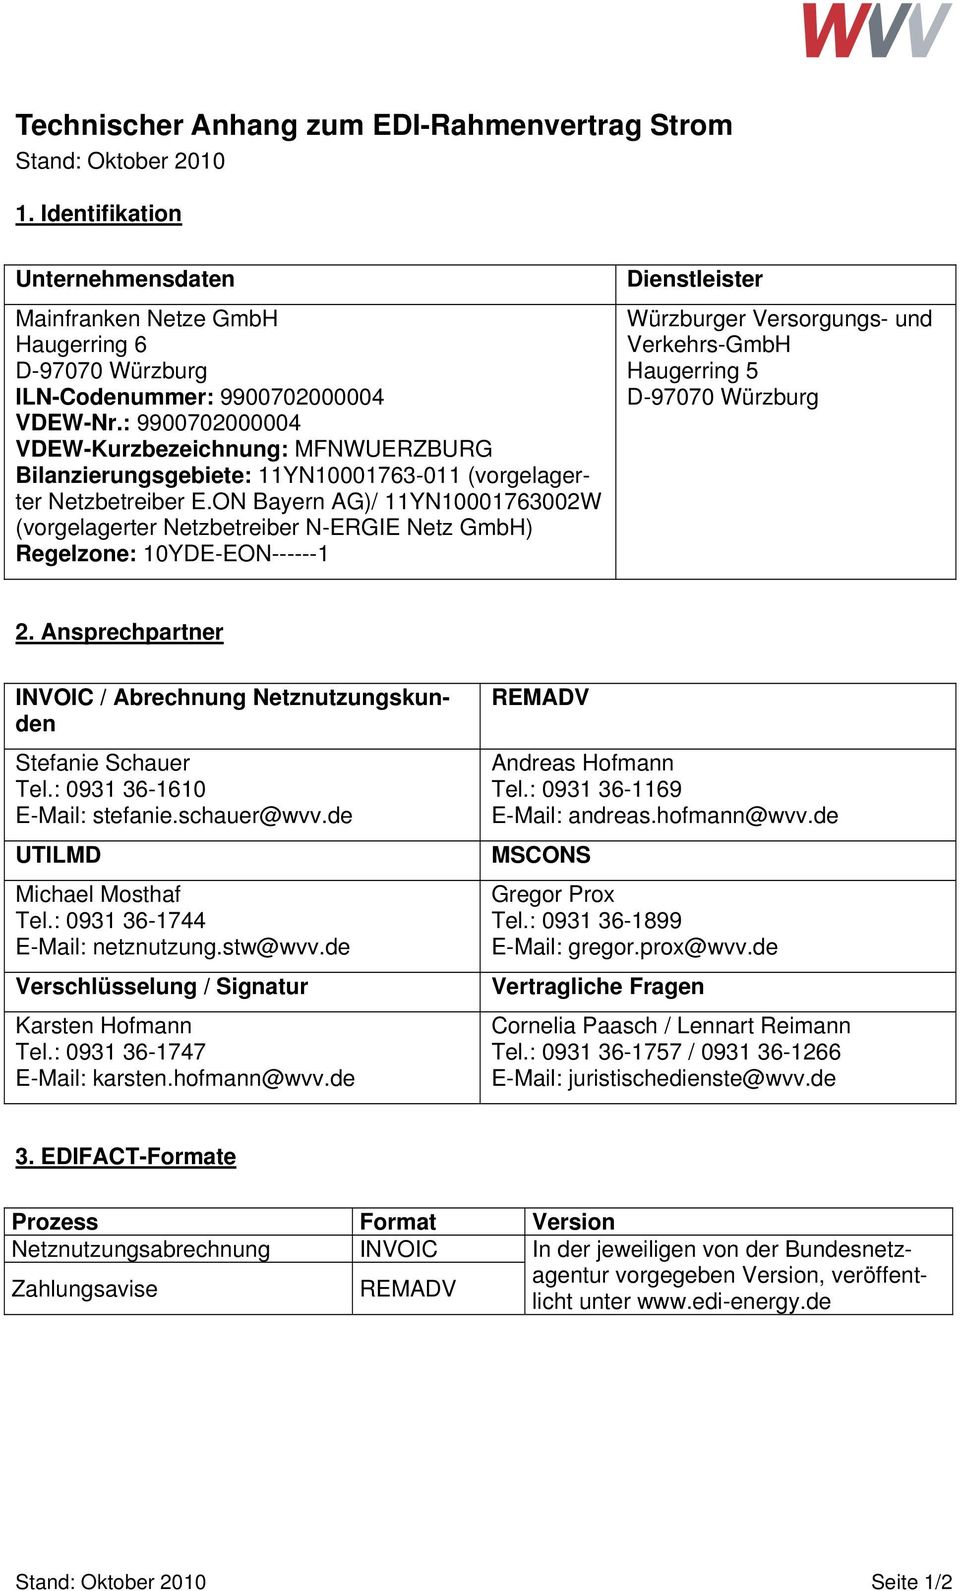 ON Bayern AG)/ 11YN10001763002W (vorgelagerter Netzbetreiber N-ERGIE Netz GmbH) Regelzone: 10YDE-EON------1 Dienstleister Würzburger Versorgungs- und Verkehrs-GmbH Haugerring 5 D-97070 Würzburg 2.